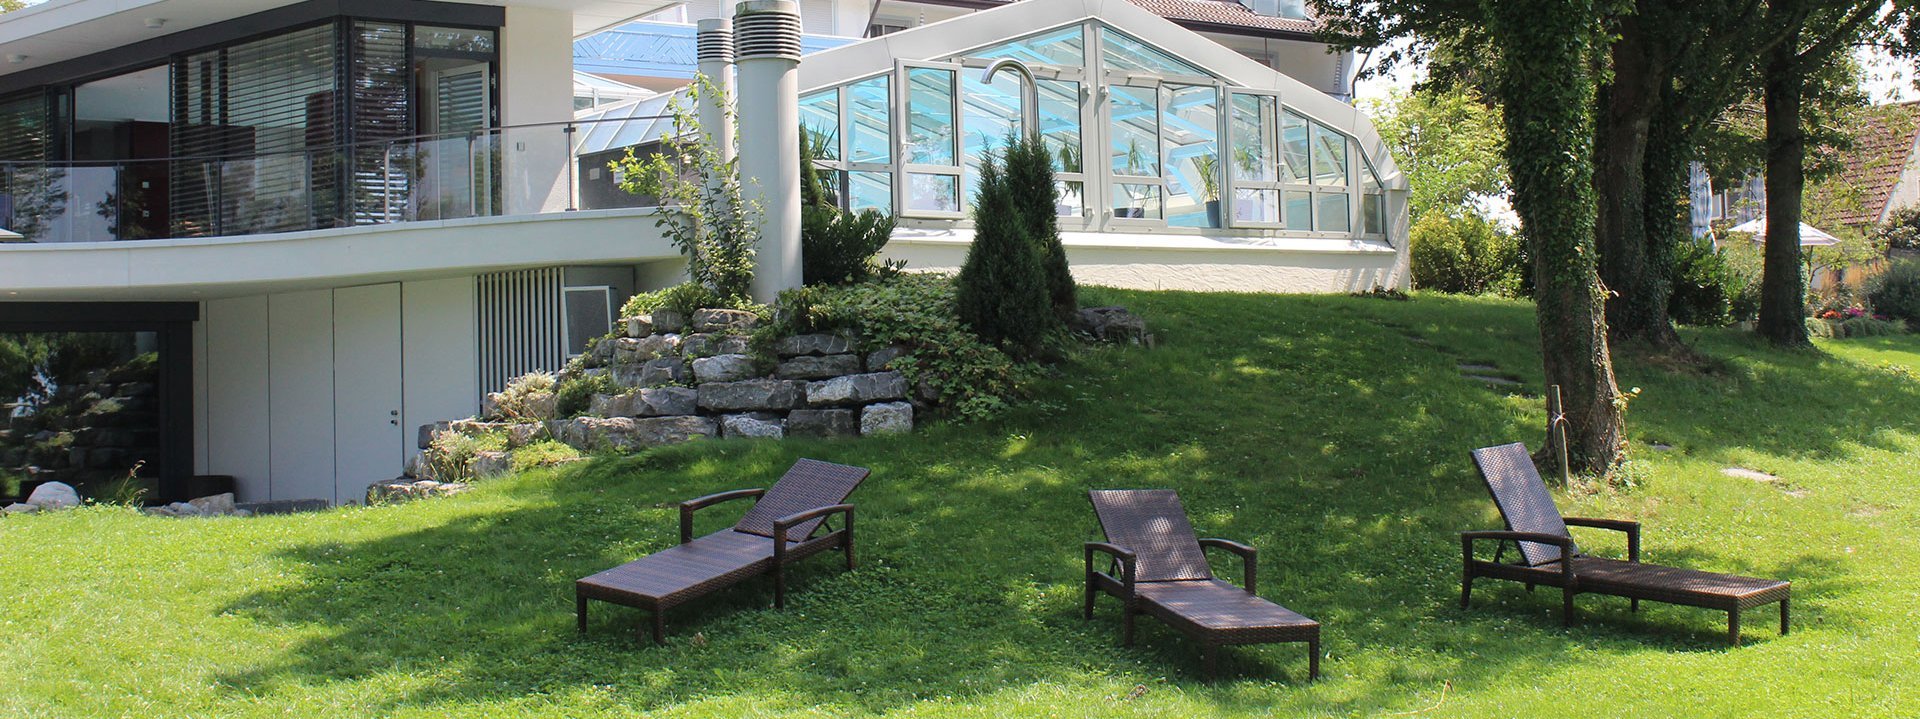 Im Garten des Hotel Schwedi stehen 3 Liegestühle. Teilweise befinden sie sich im Schatten der Bäume. Im Hintergrund ist der Pool zu erkennen.